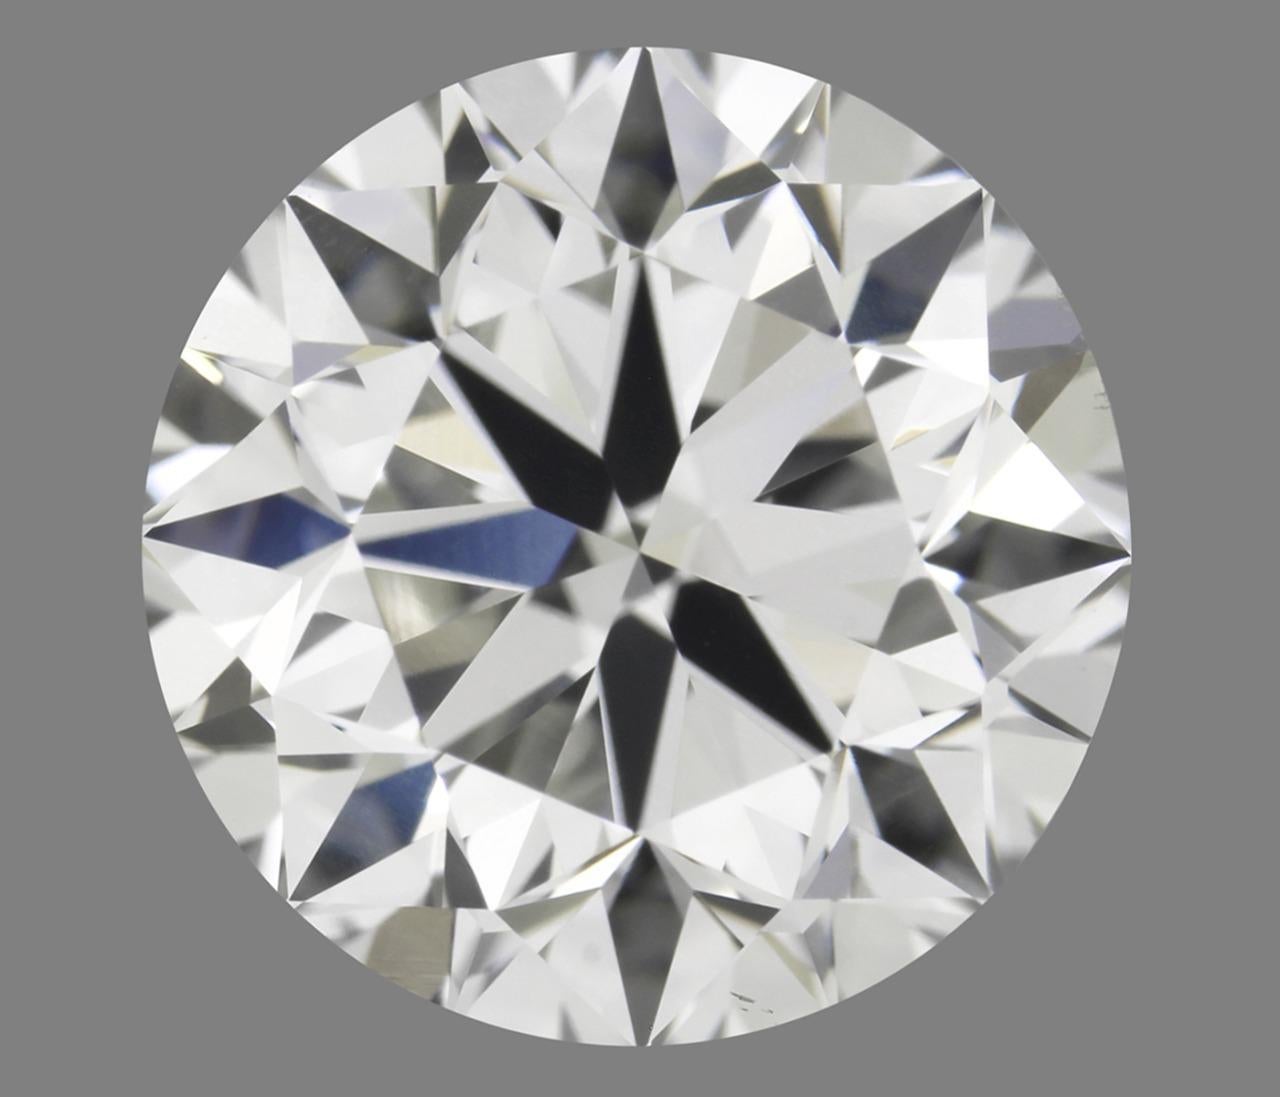 Diamant naturel de 0,50 carat, certifié GIA, D/VVS1, taille brillant, excellent

Des Brilliantes parfaites pour des cadeaux parfaits.

A.C.C. :
Certificat : GIA
Carat : 0.50ct
Couleur : D
Clarté : VVS1 (Très très légèrement inclus)
Coupe :